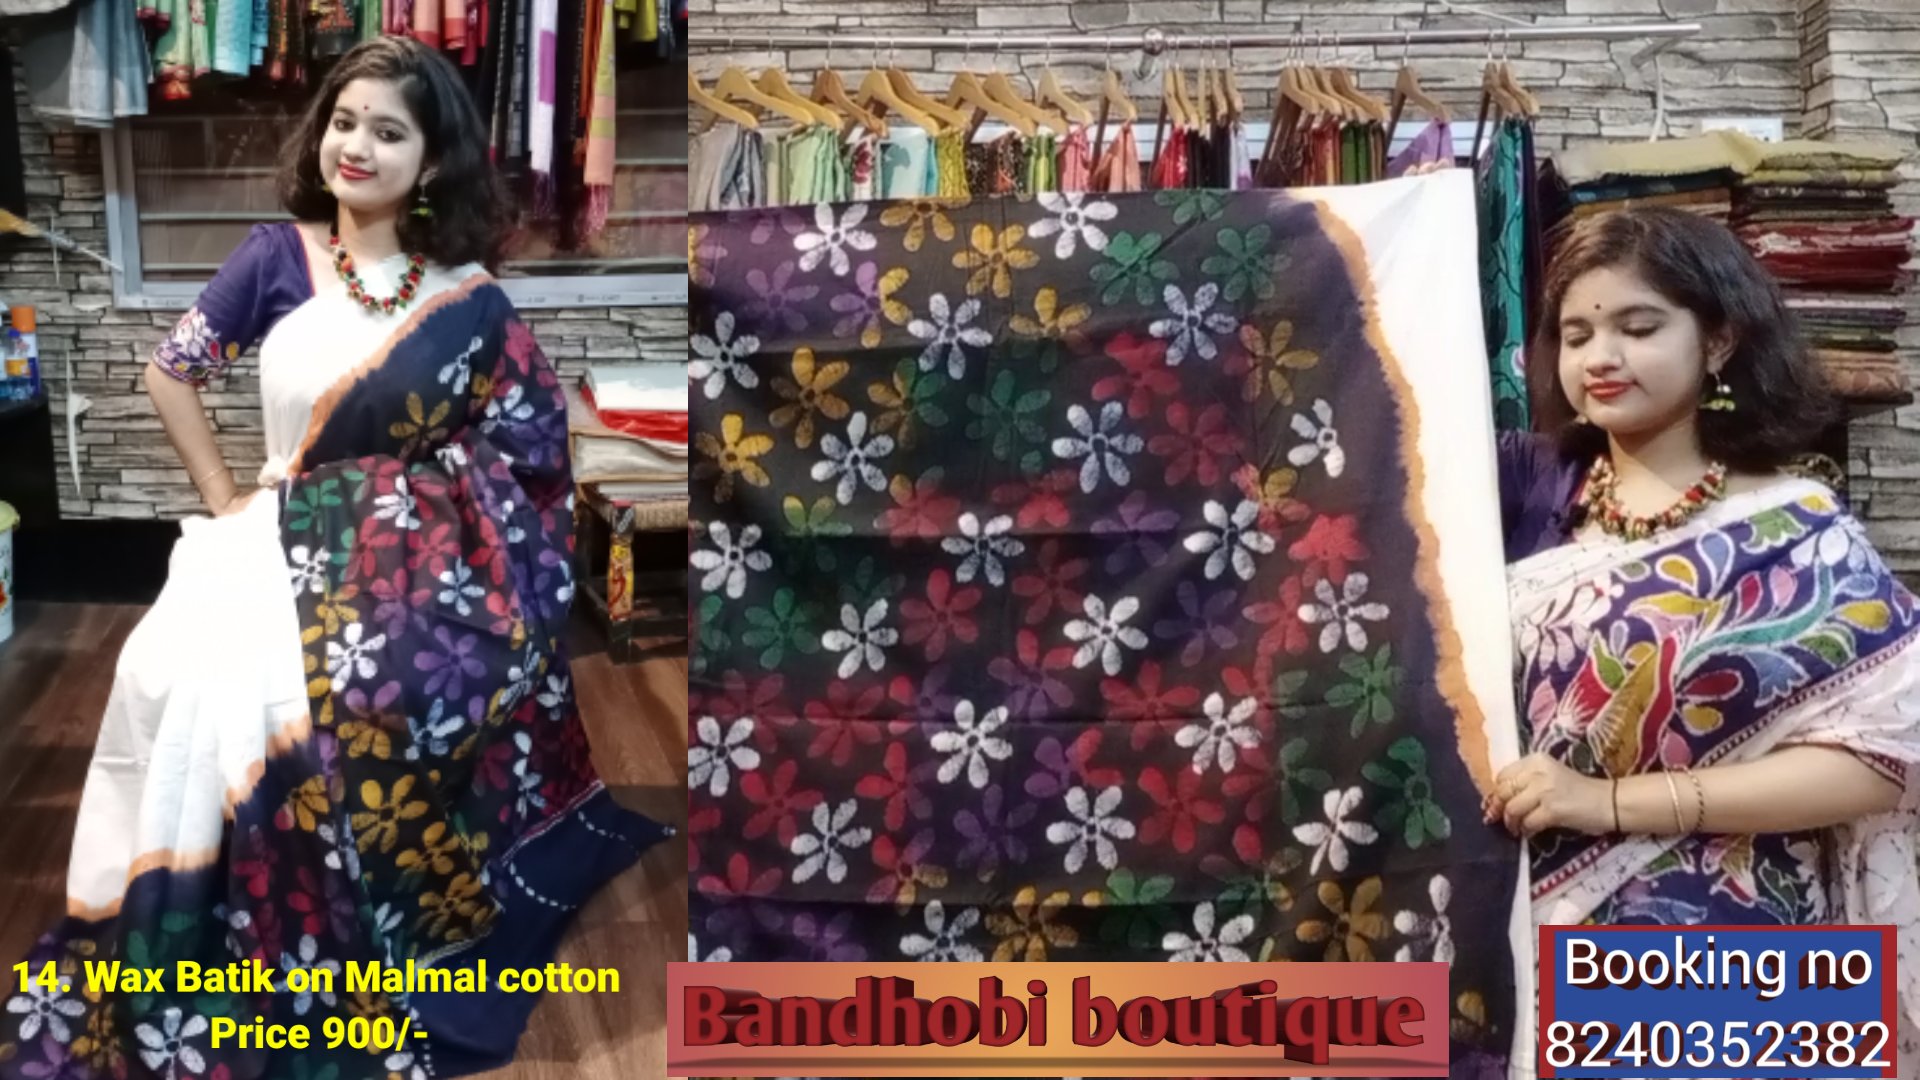 Wax Batik on Malmal cotton